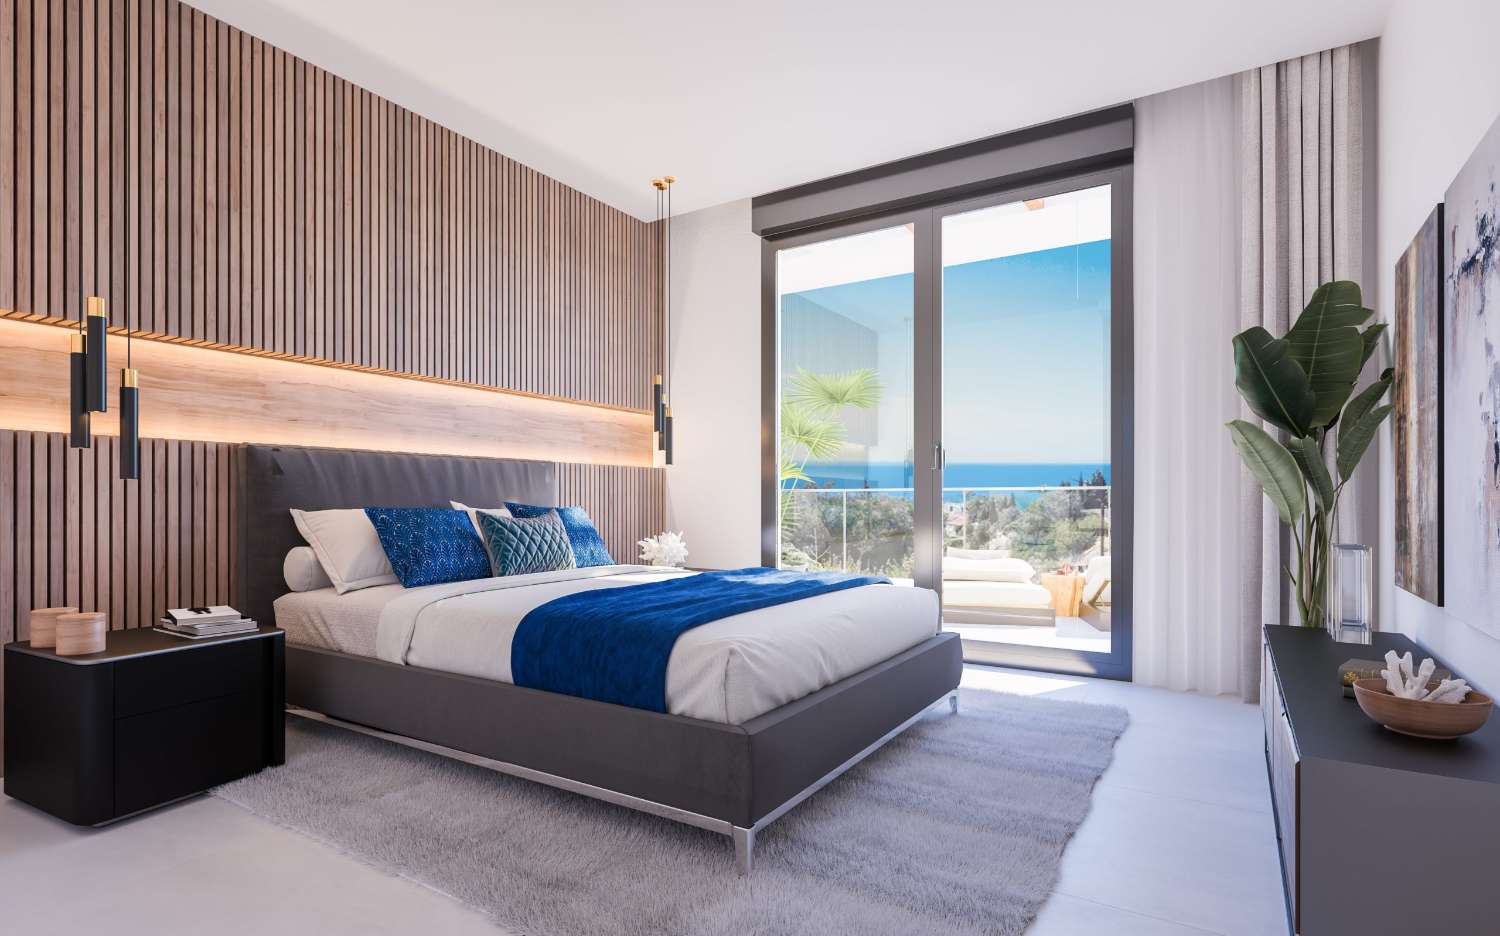 Excellent apartments with sea views in Alto de Los Monteros!